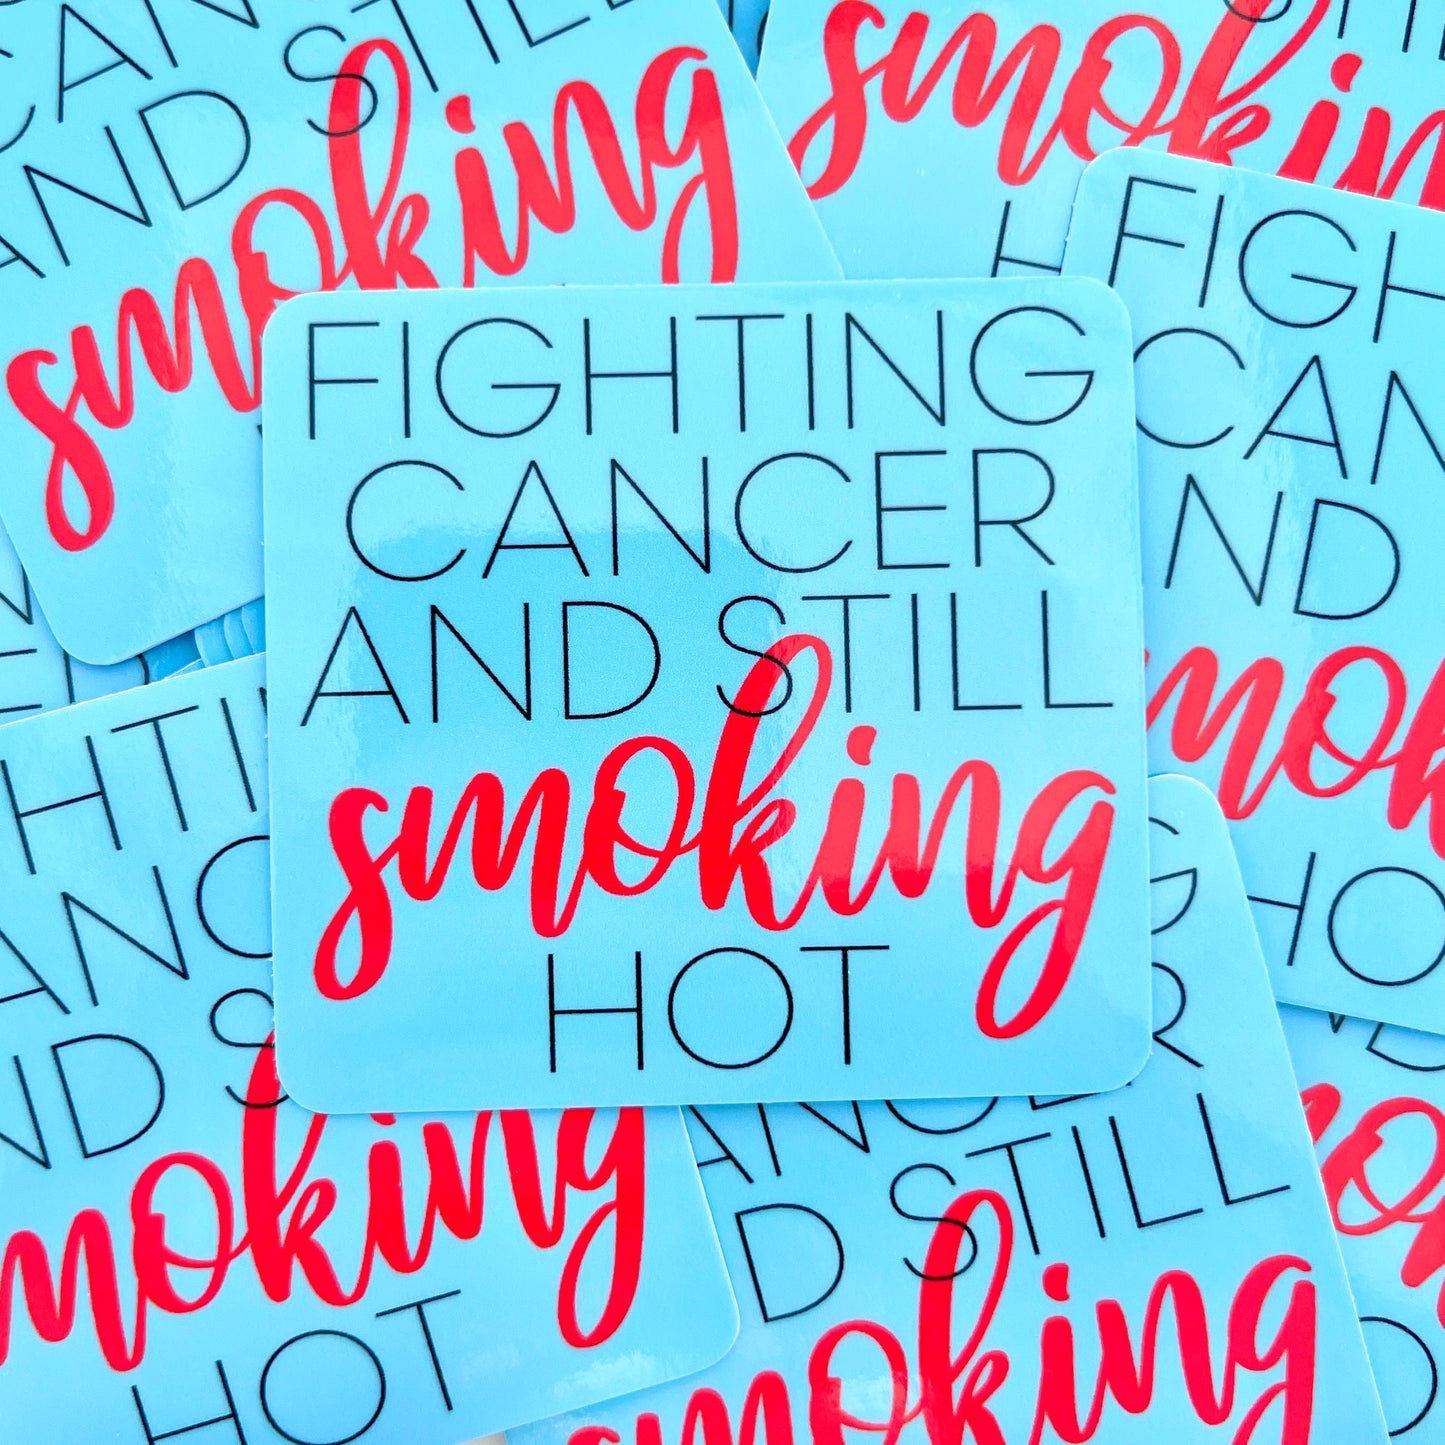 Fighting Cancer Still Smoking Hot vinyl sticker